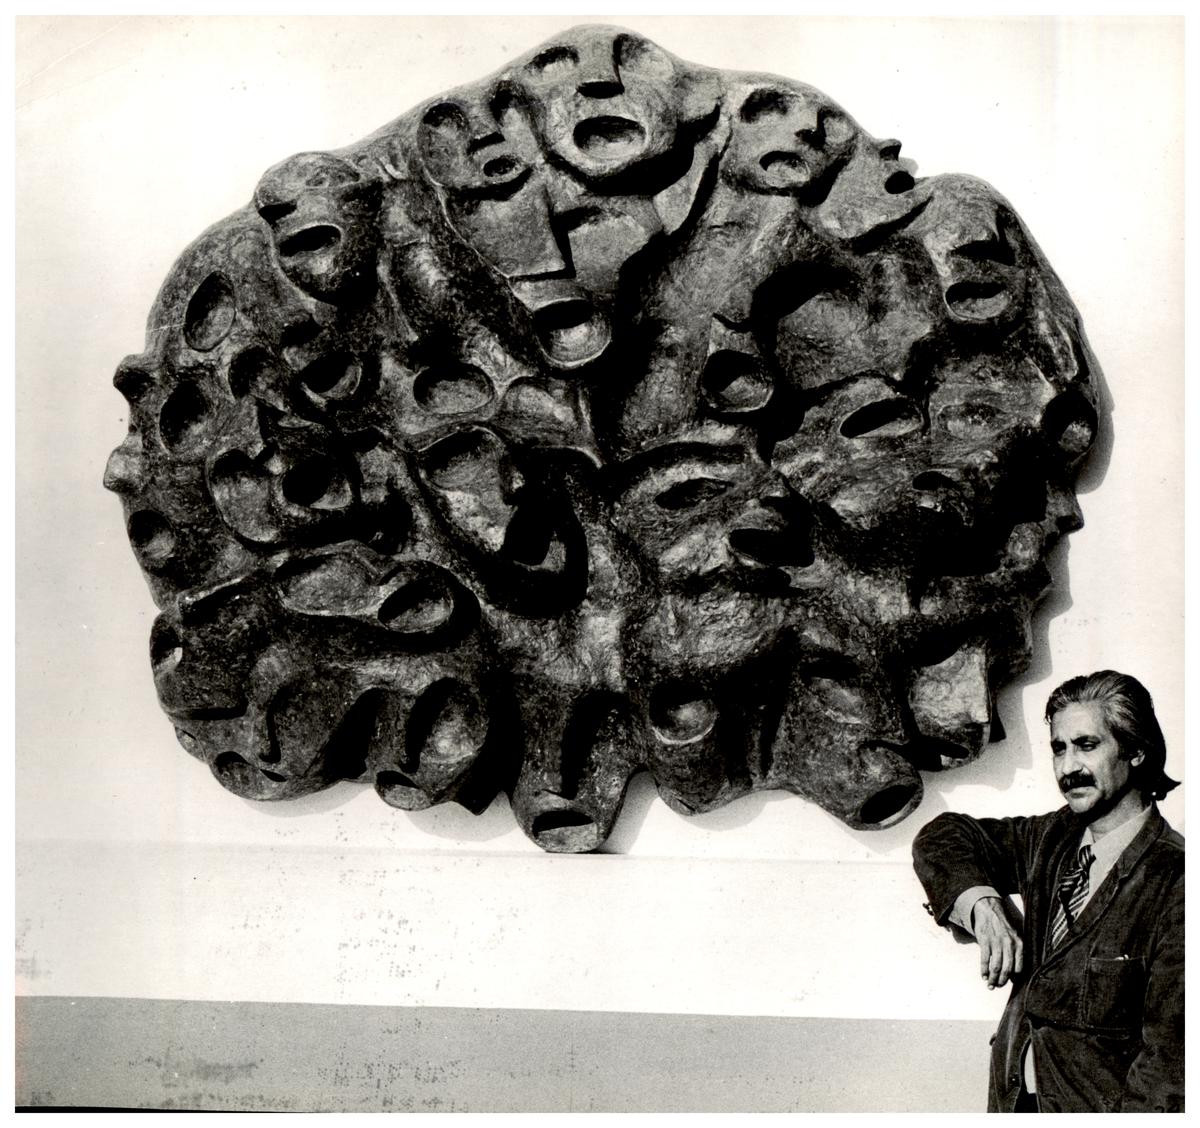 सहगल अपनी सबसे प्रसिद्ध कृतियों में से एक, एंगुइश्ड क्राइज़ (1971) के साथ